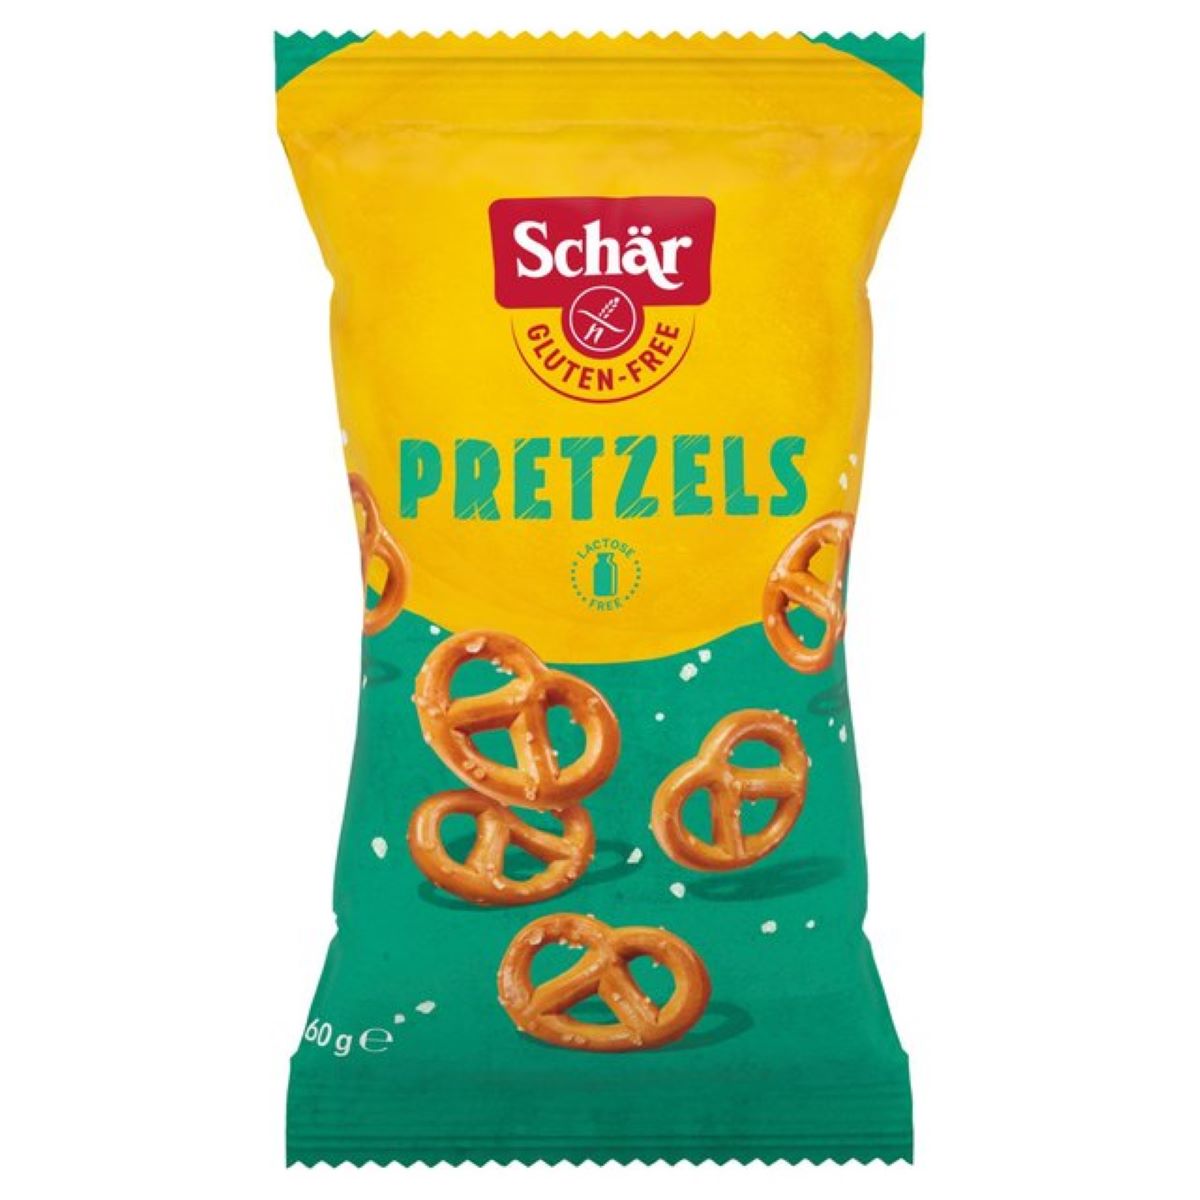 Schar Gluten Free Pretzels 60g